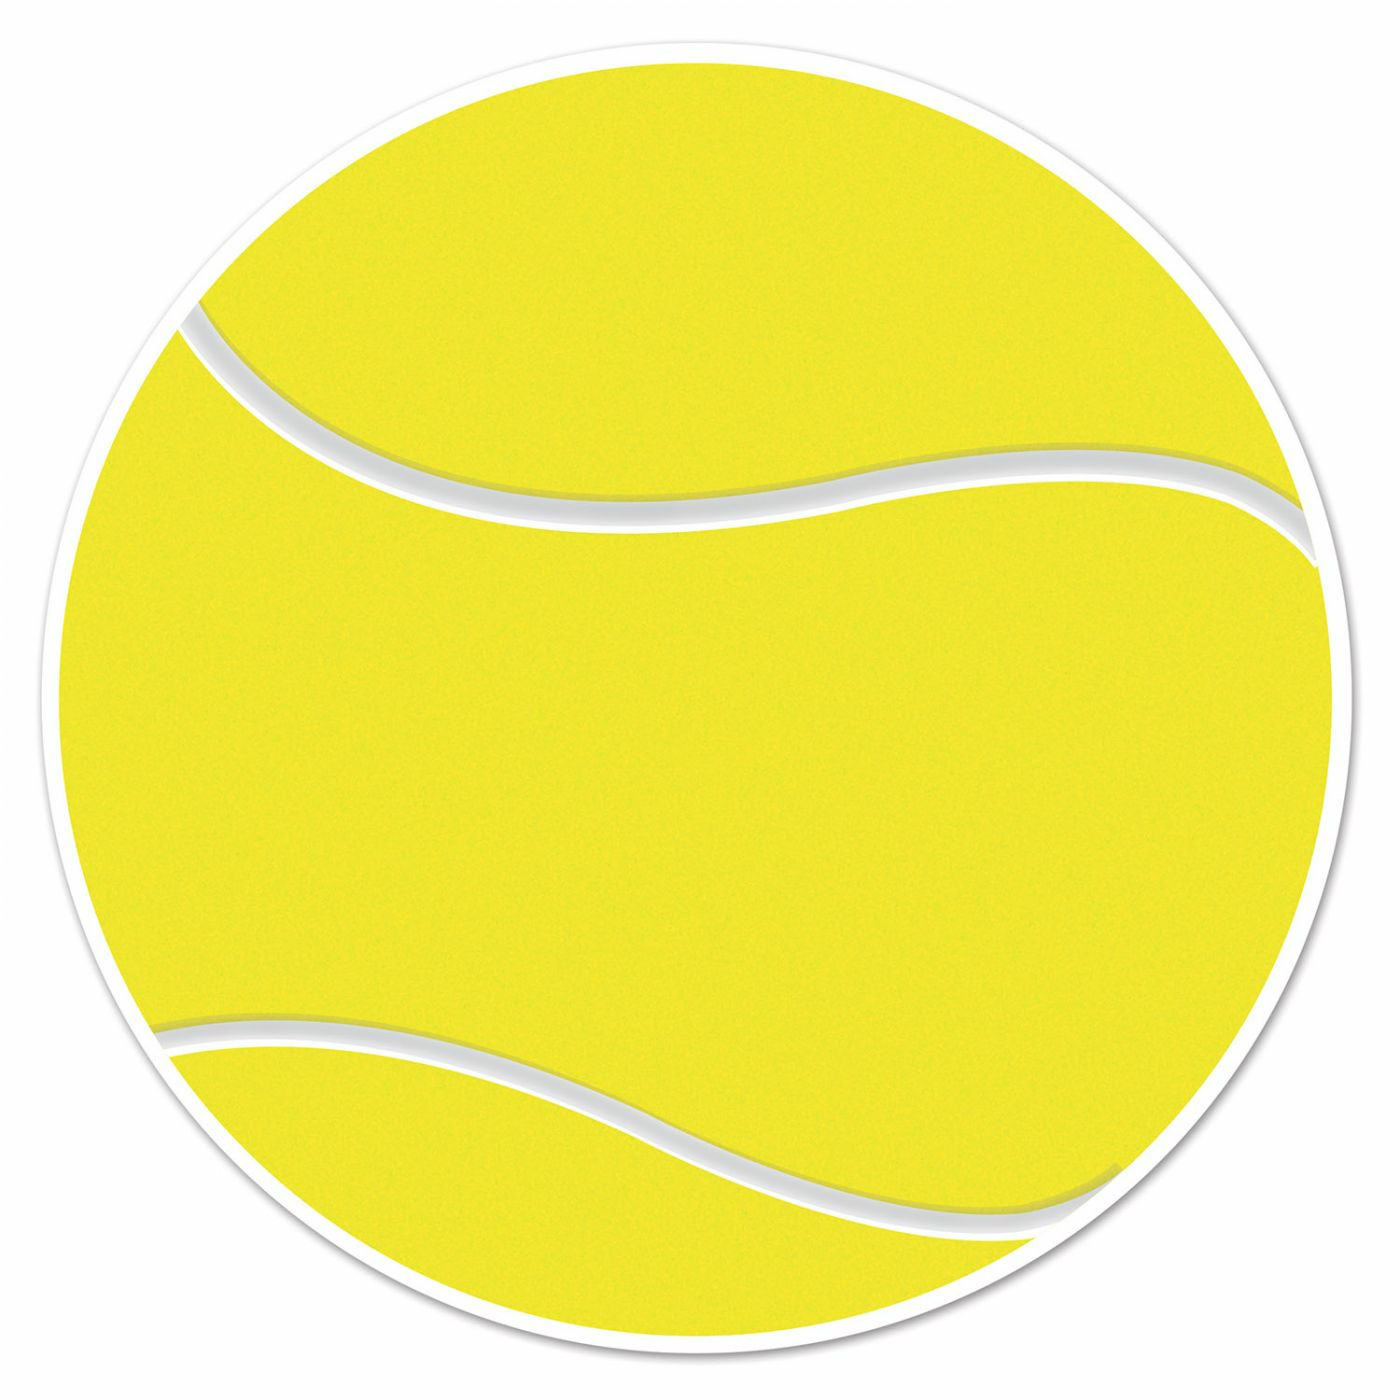 Tennisbal sport decoratie sticker versiering geel dia 13 cm vinyl